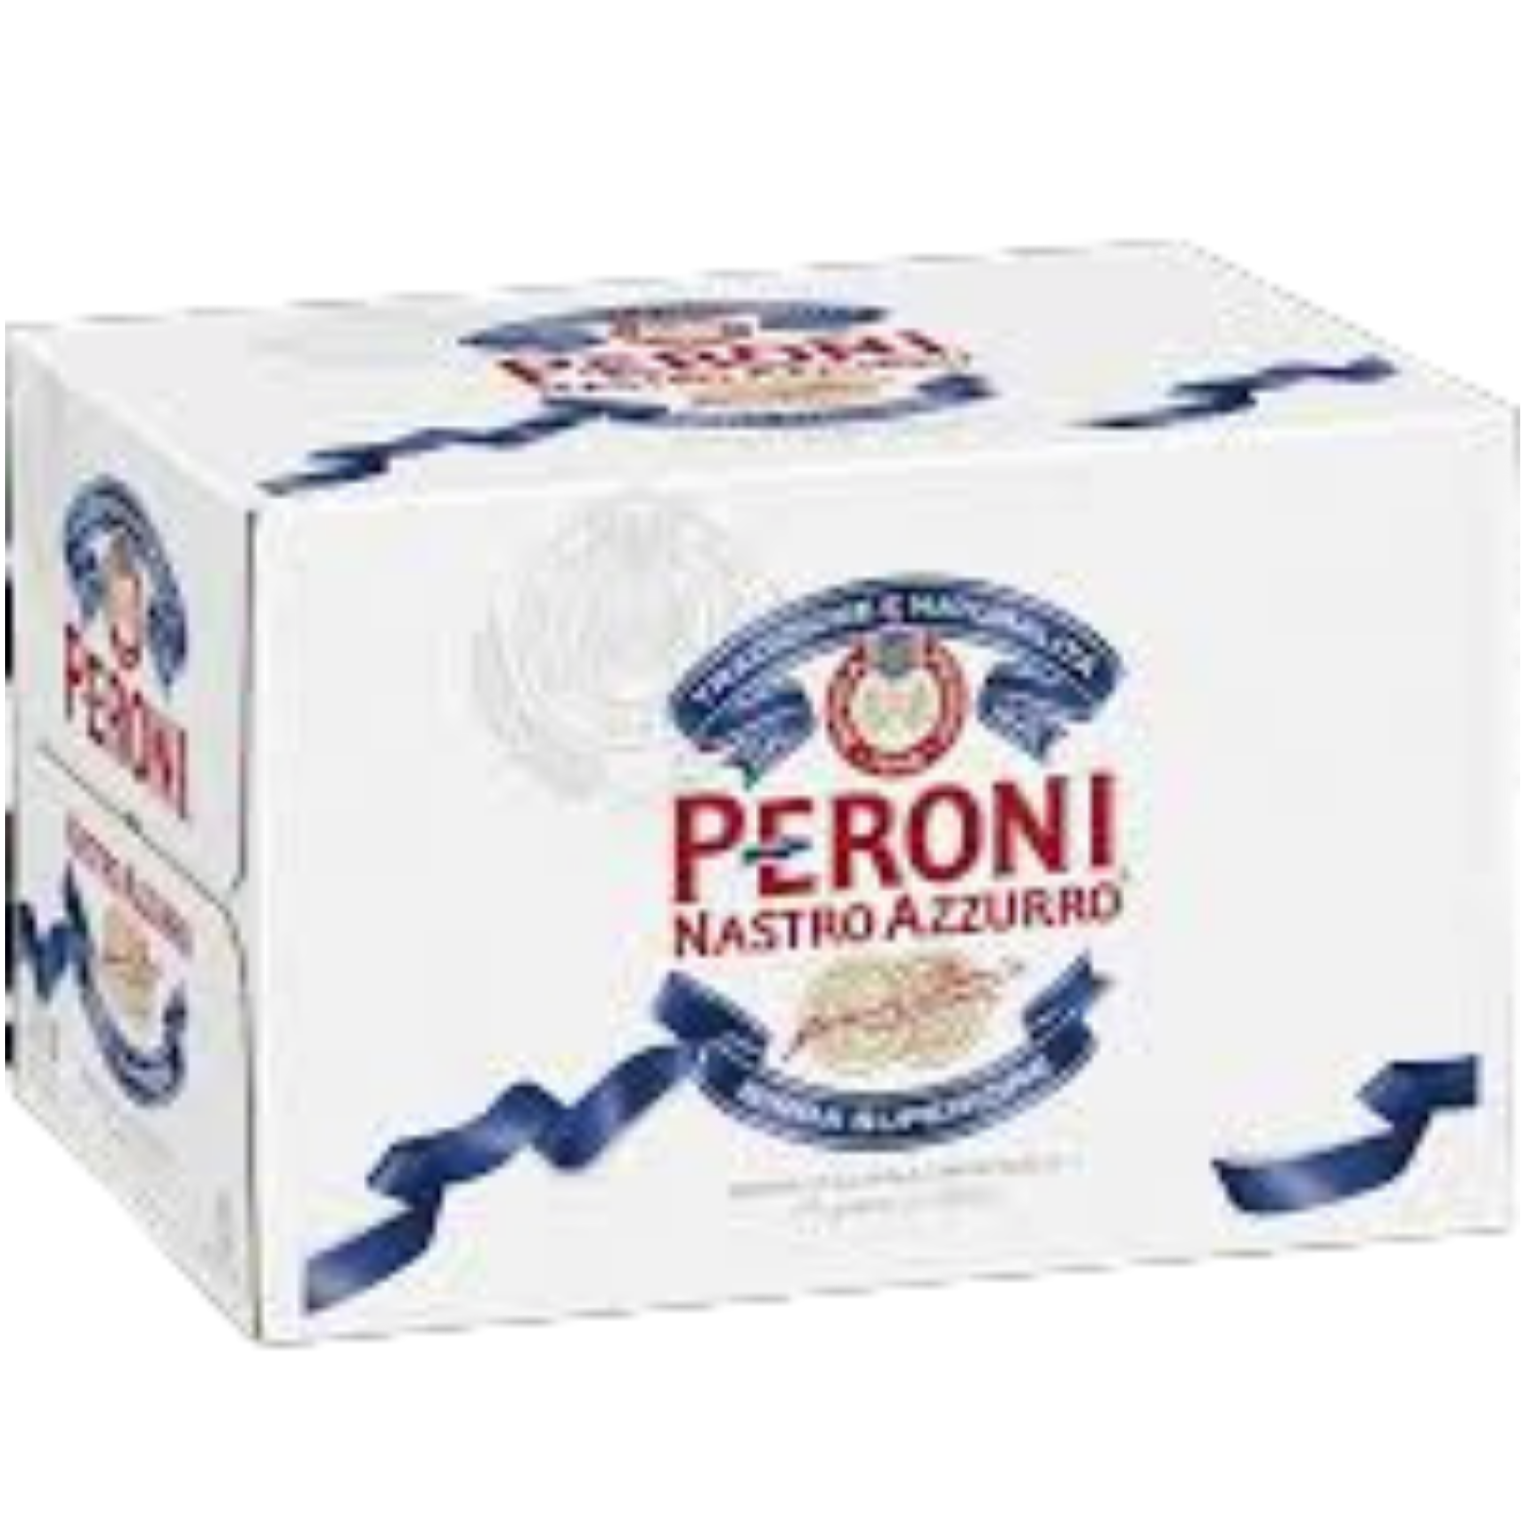 Peroni Nastro Azzurro Bottles 330mL